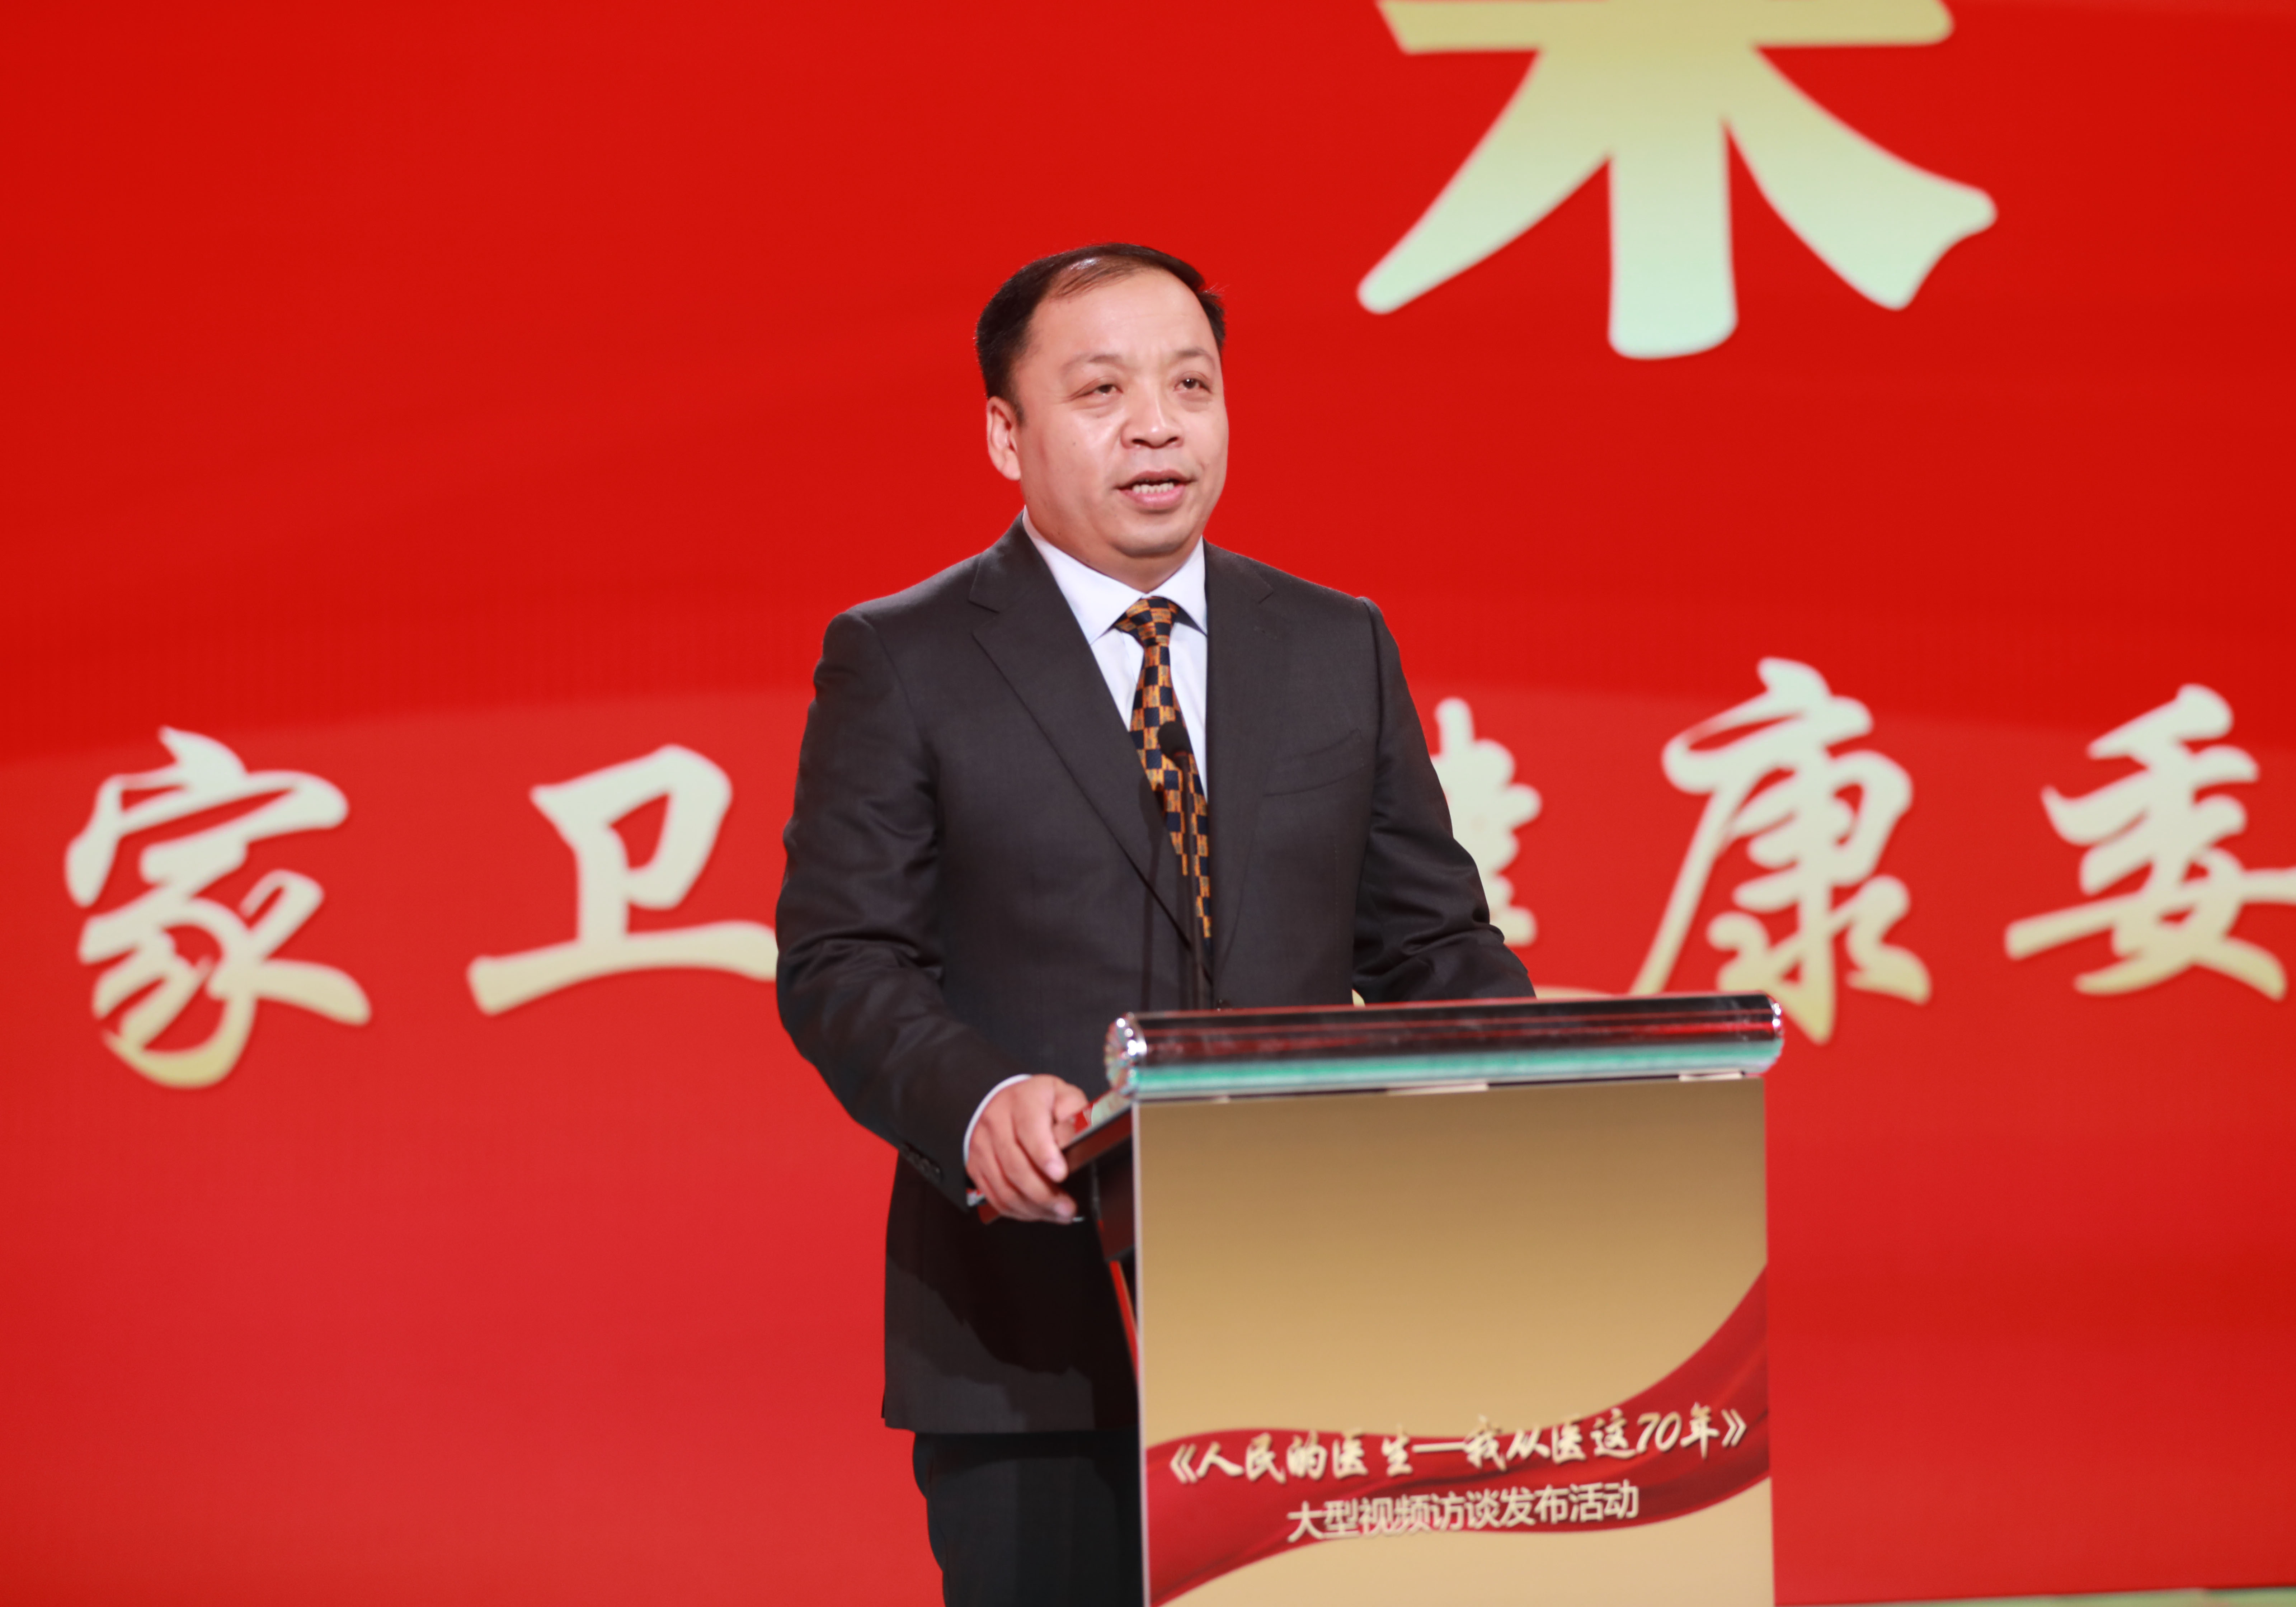 國家衛生健康委宣傳司副司長米鋒致辭